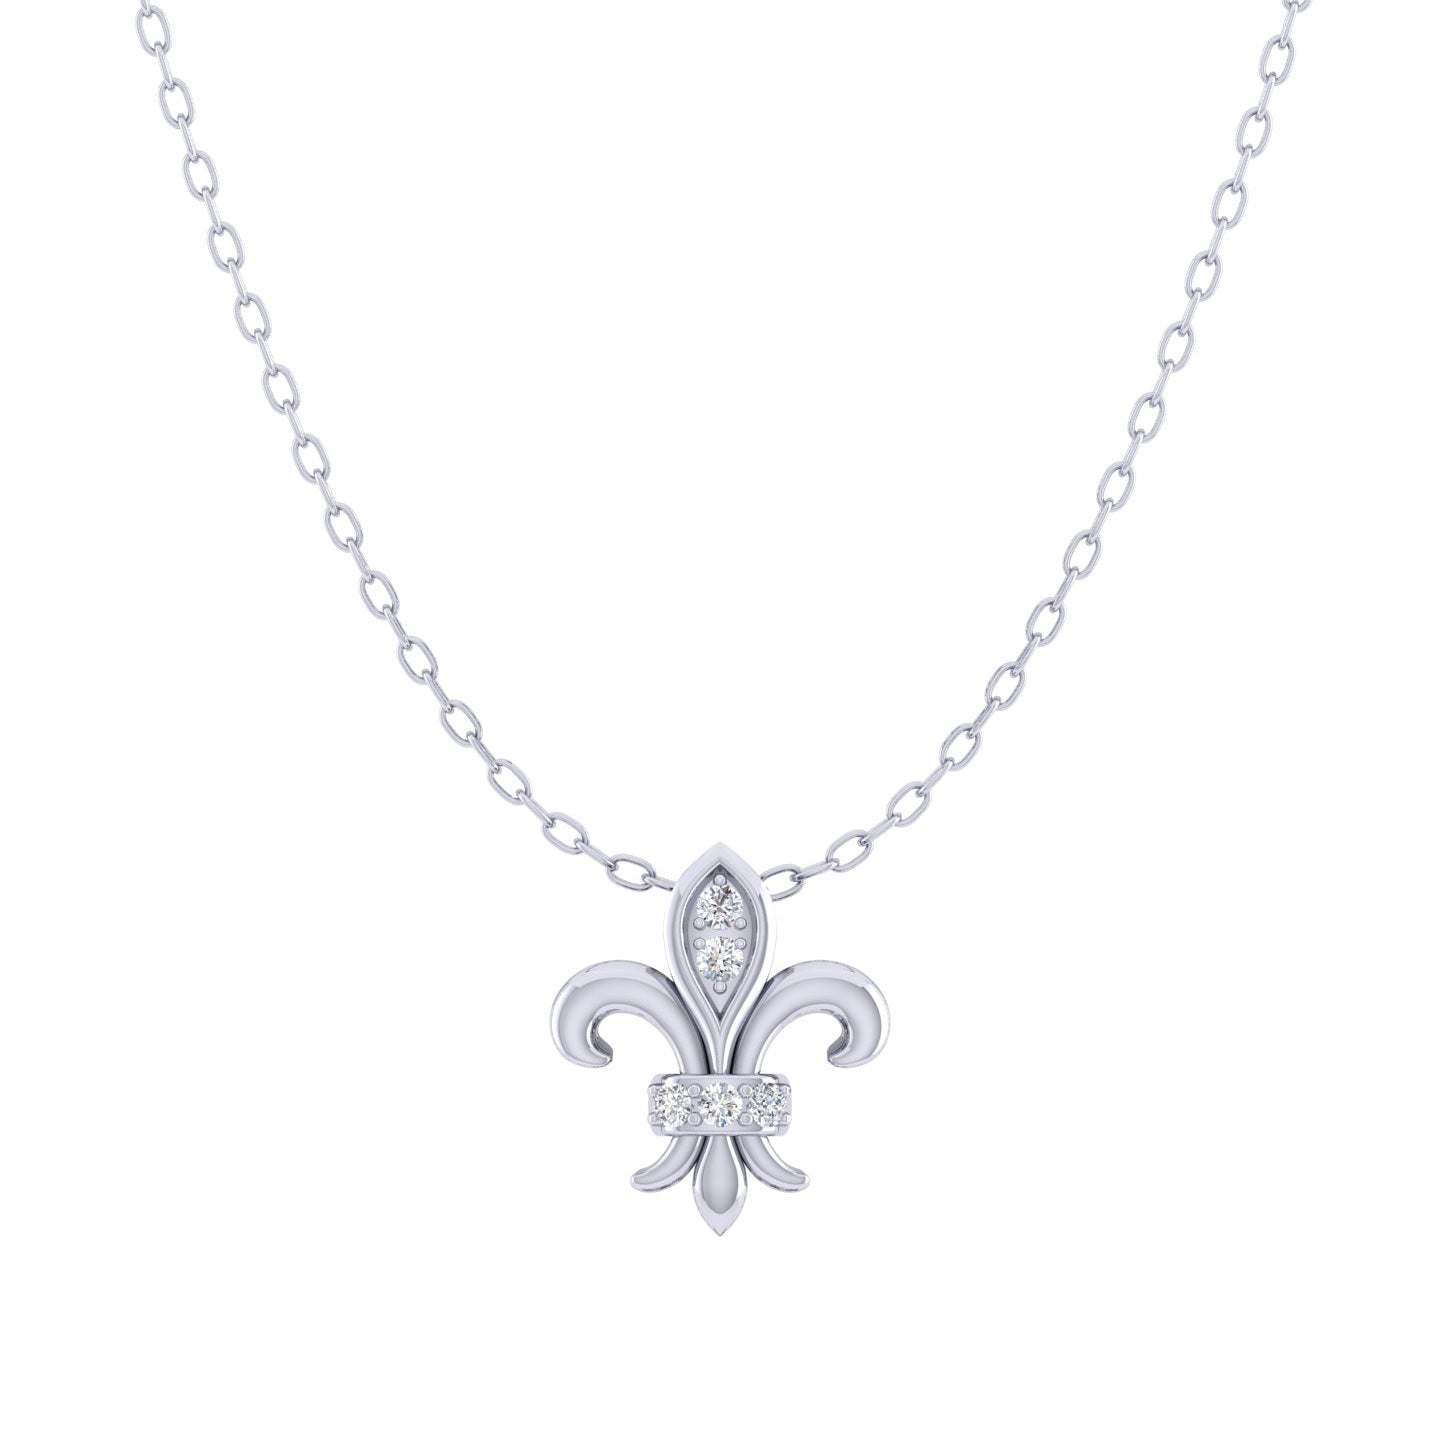 Fleur De Lis 1/20 Cttw Natural Diamond Pendant Necklace set in 925 Sterling Silver fine jewelry